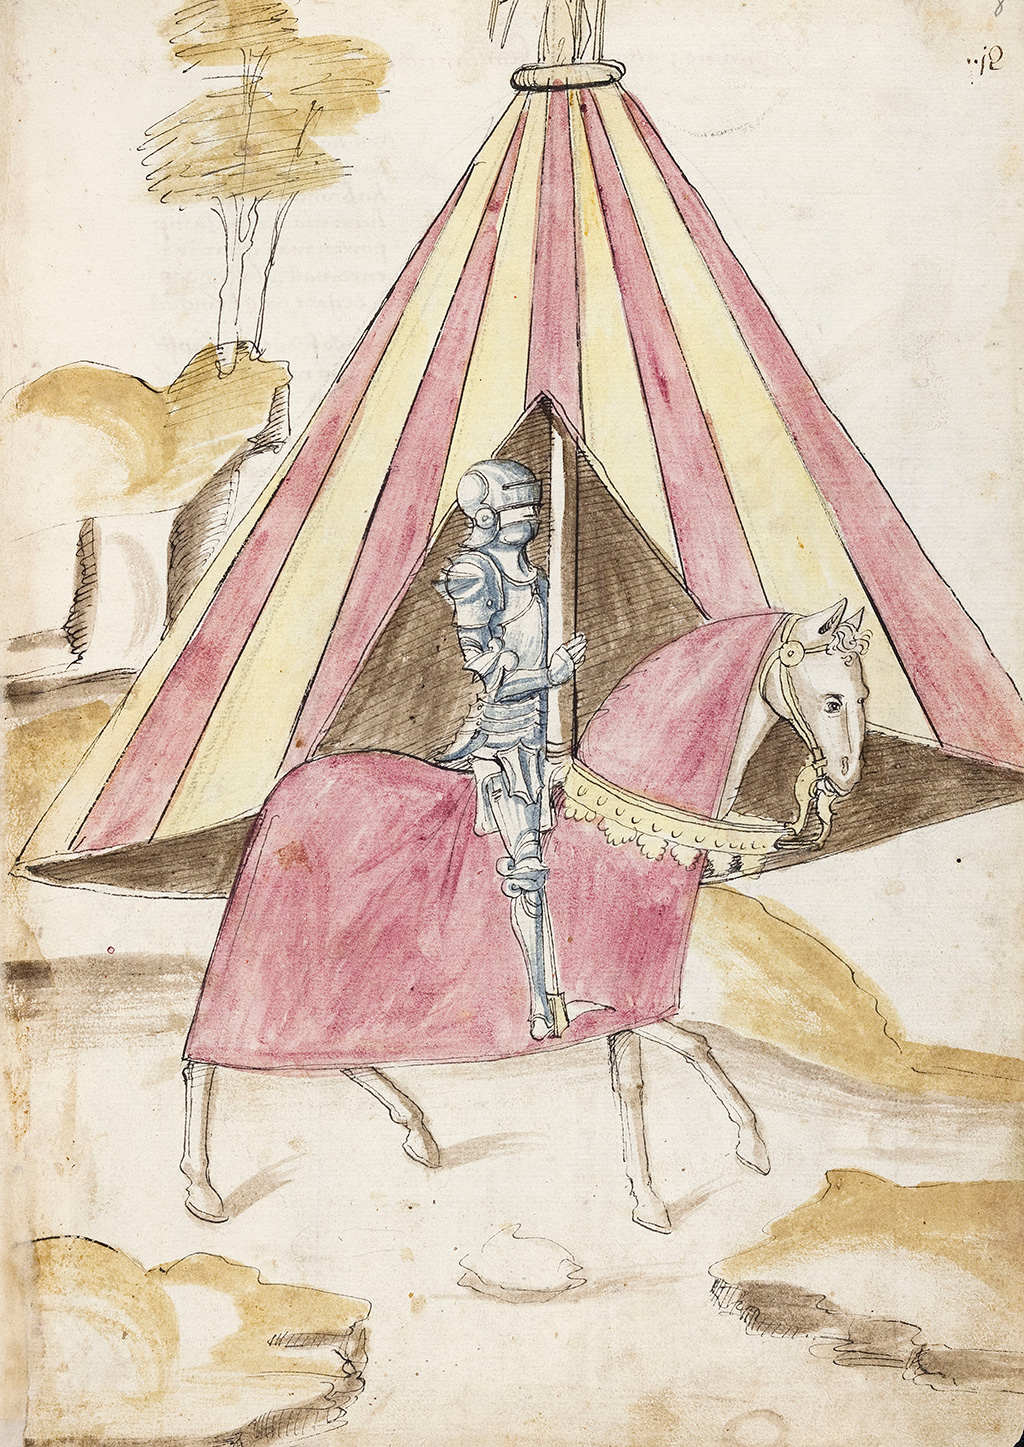 zu sehen ist ein Ritter in voller Rüstung auf einem Pferd. Dahinter befindet sich ein Zelt. 